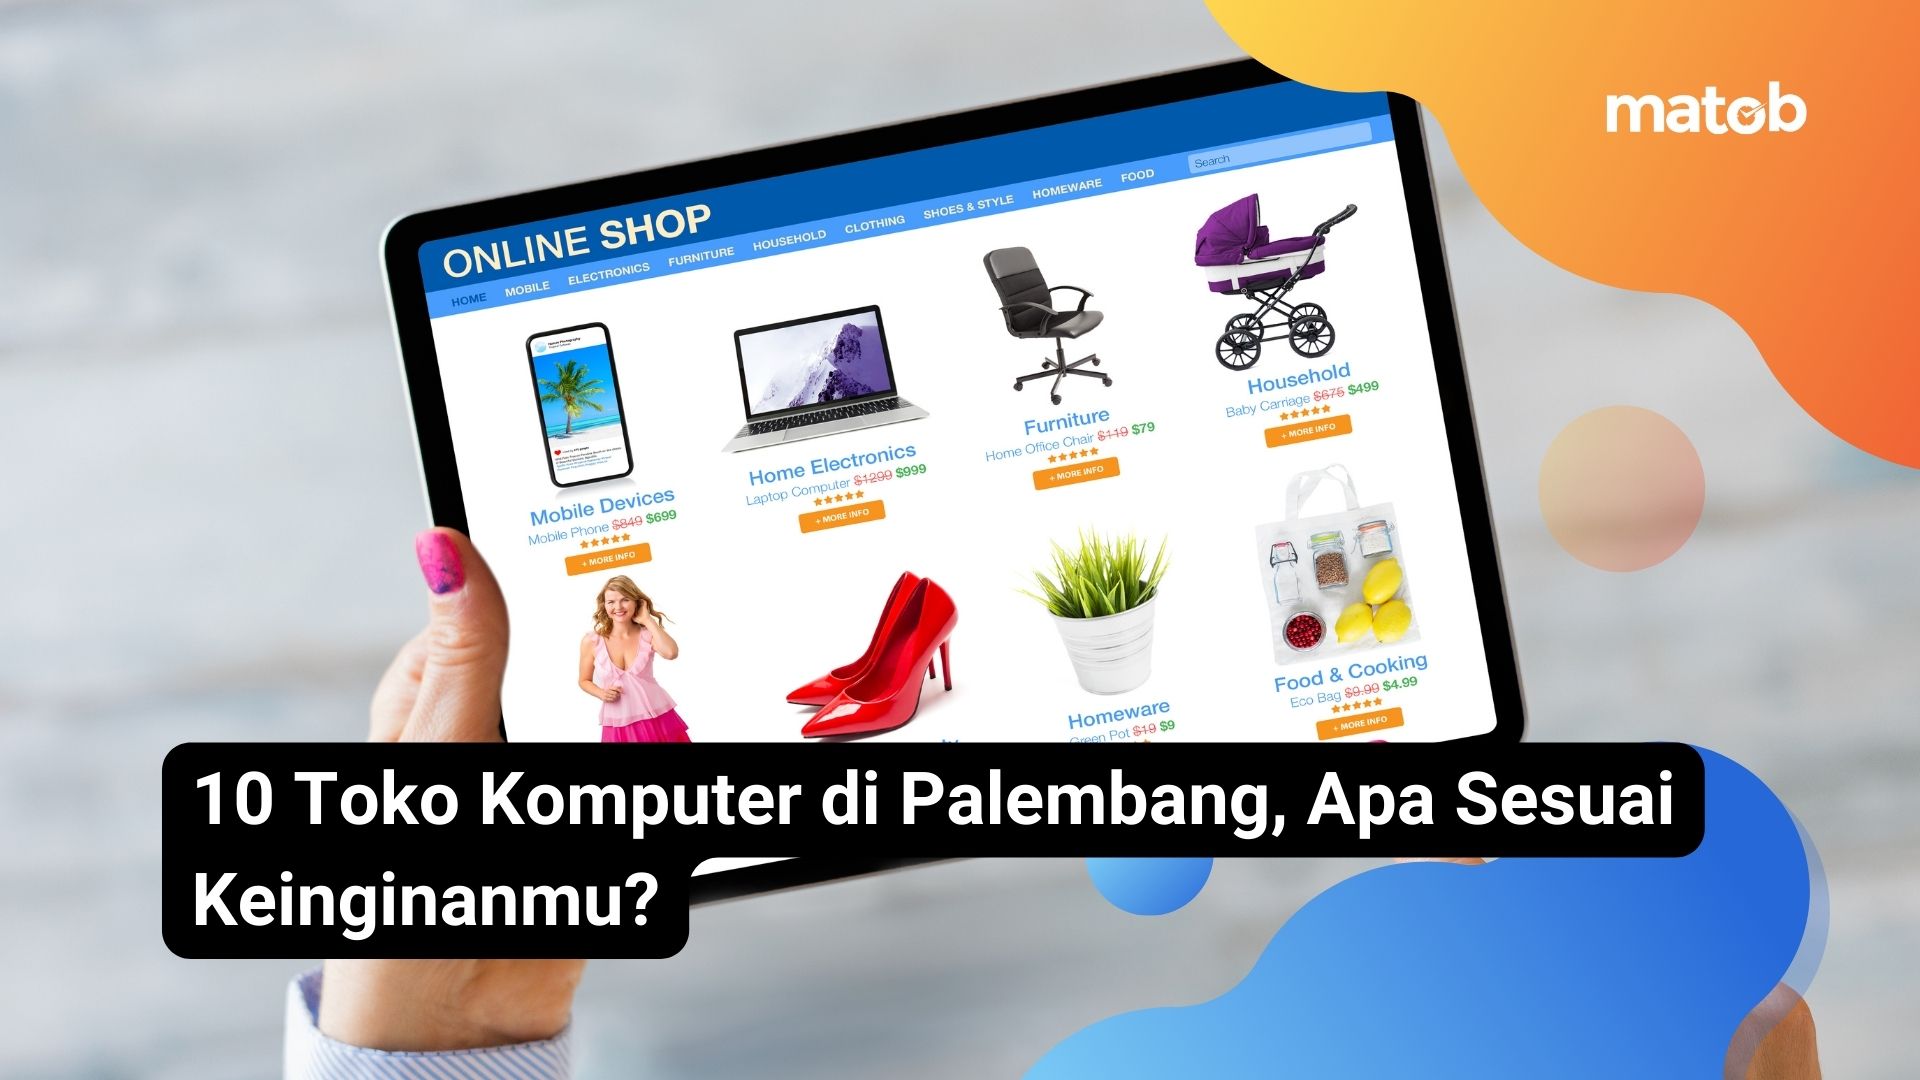 10 Toko Komputer di Palembang, Apa Sesuai Keinginanmu?